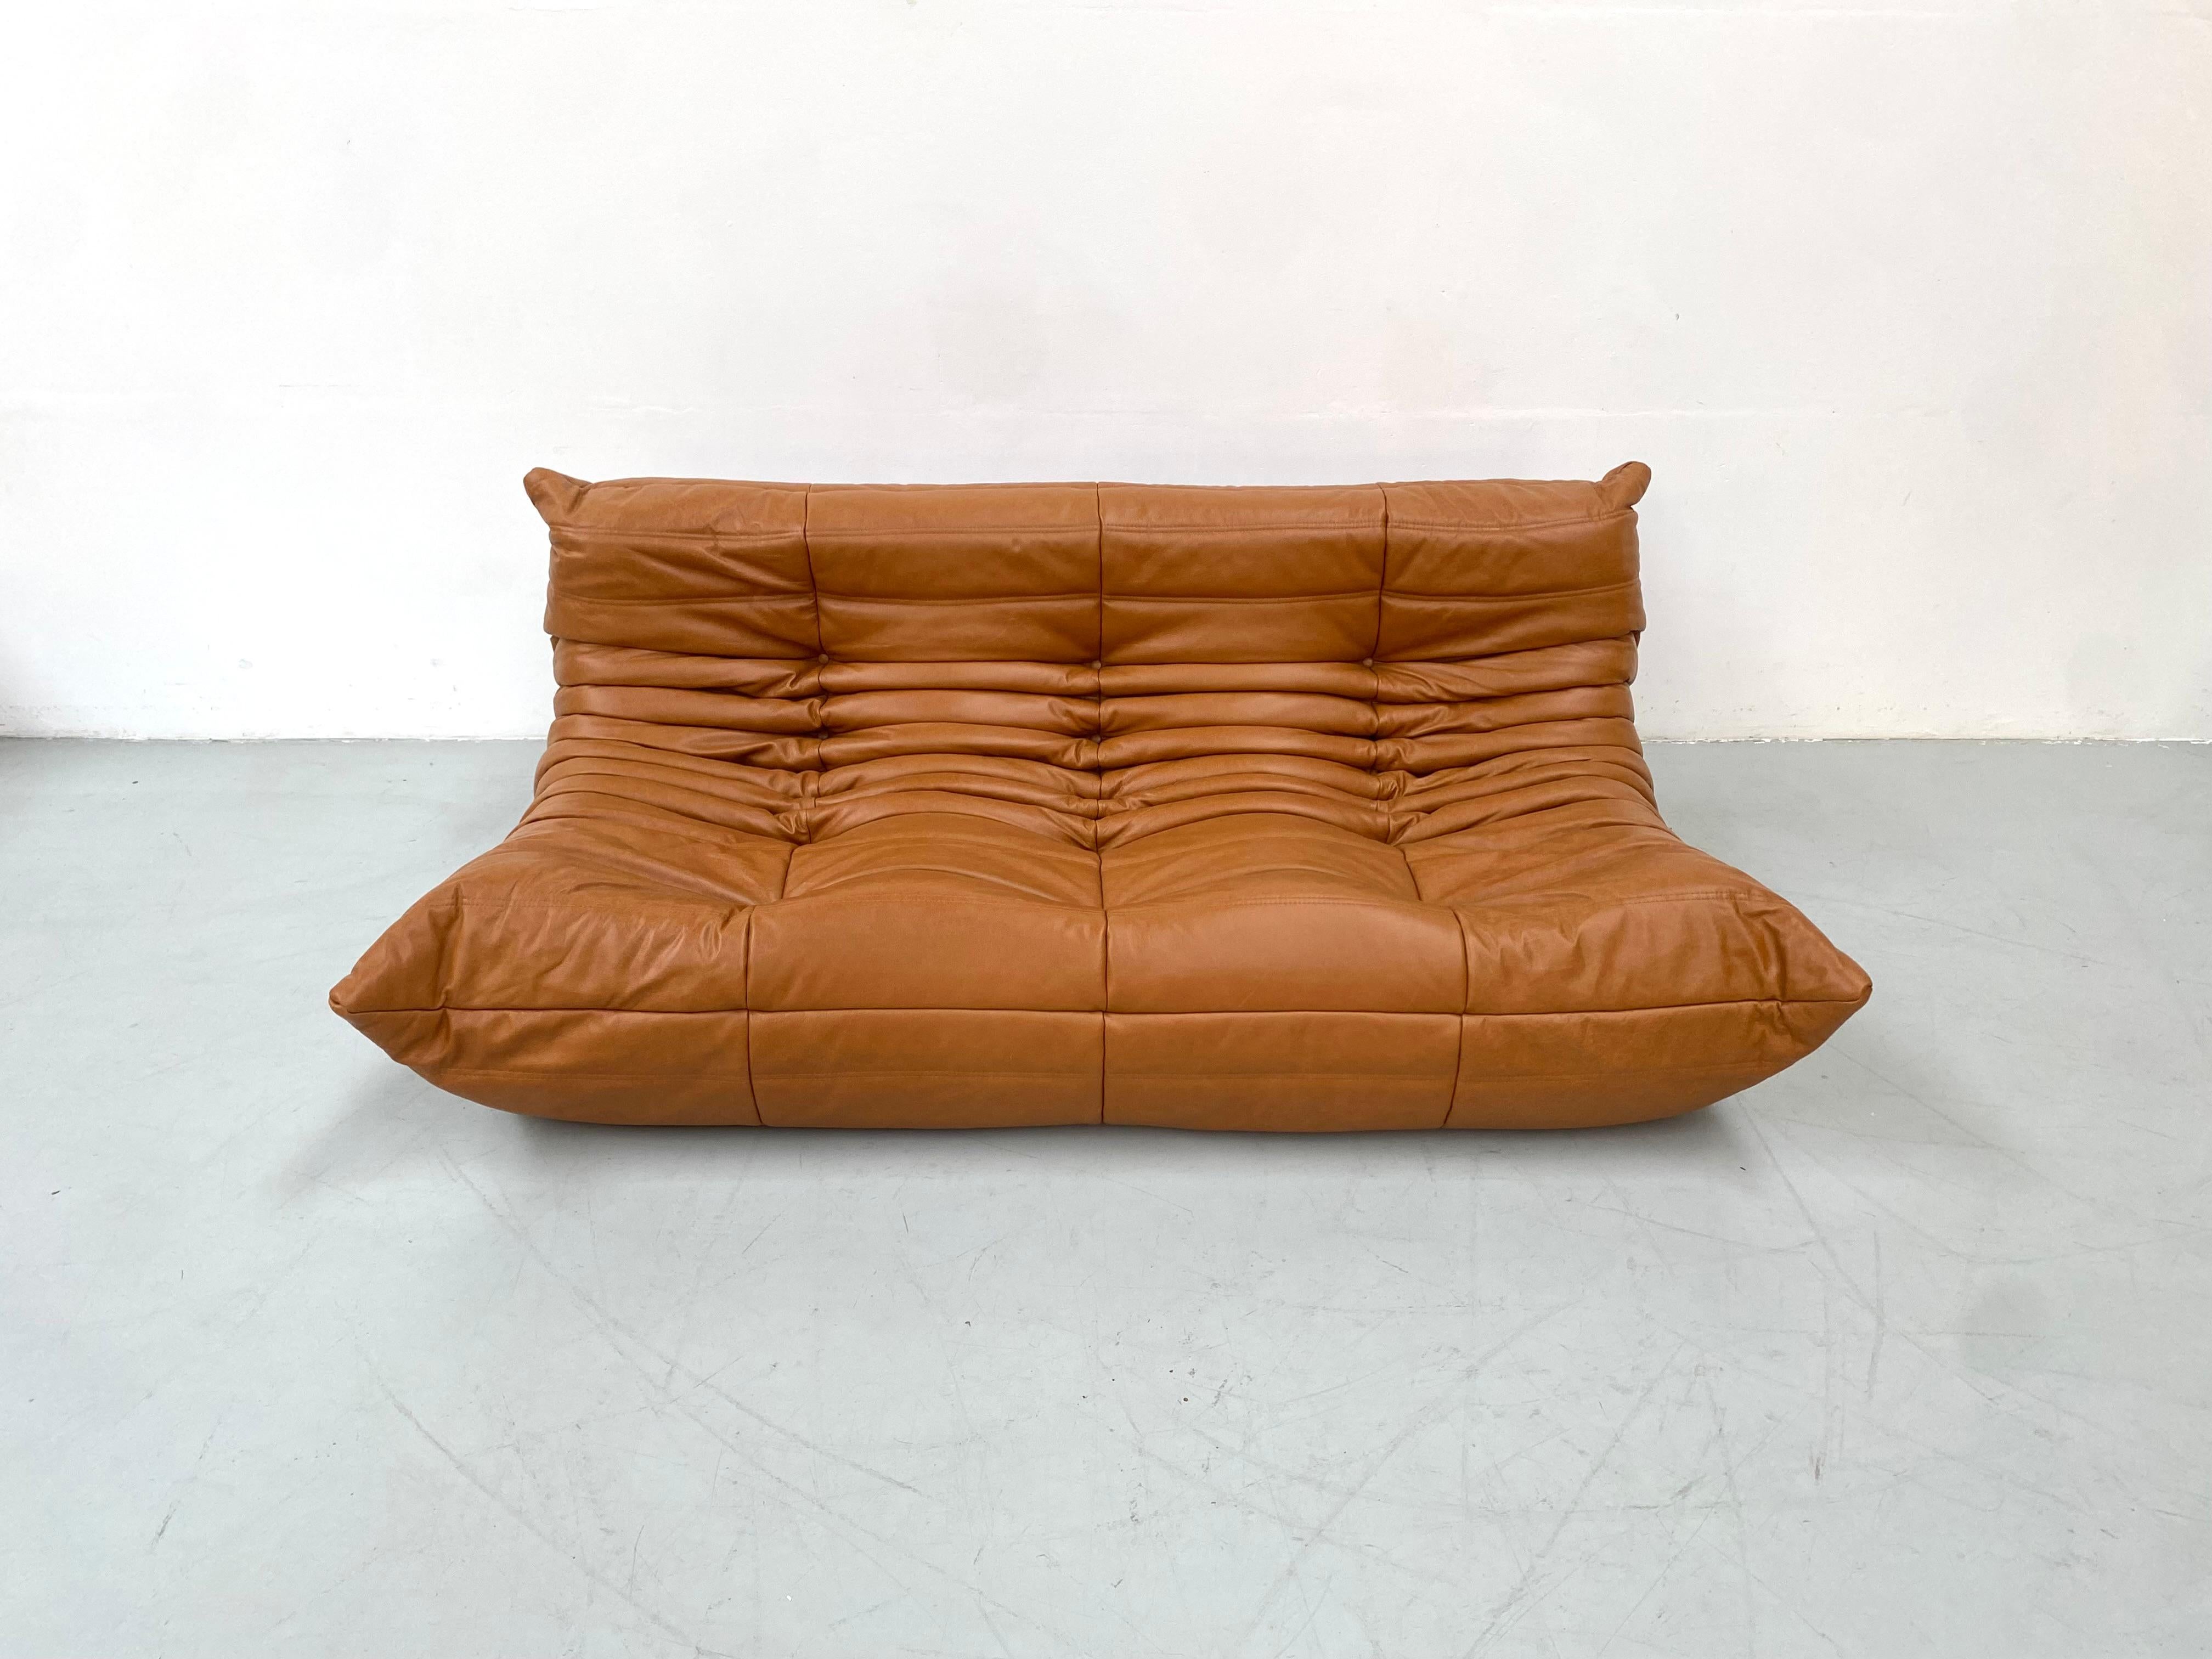 Le Togo a été conçu par Michel Ducaroy en 1973.  Il s'agit du premier canapé/fauteuil fabriqué uniquement en mousse et en cuir. L'intérieur est composé de mousse de 5 densités différentes. Fabriqué par Ligne Roset en France.